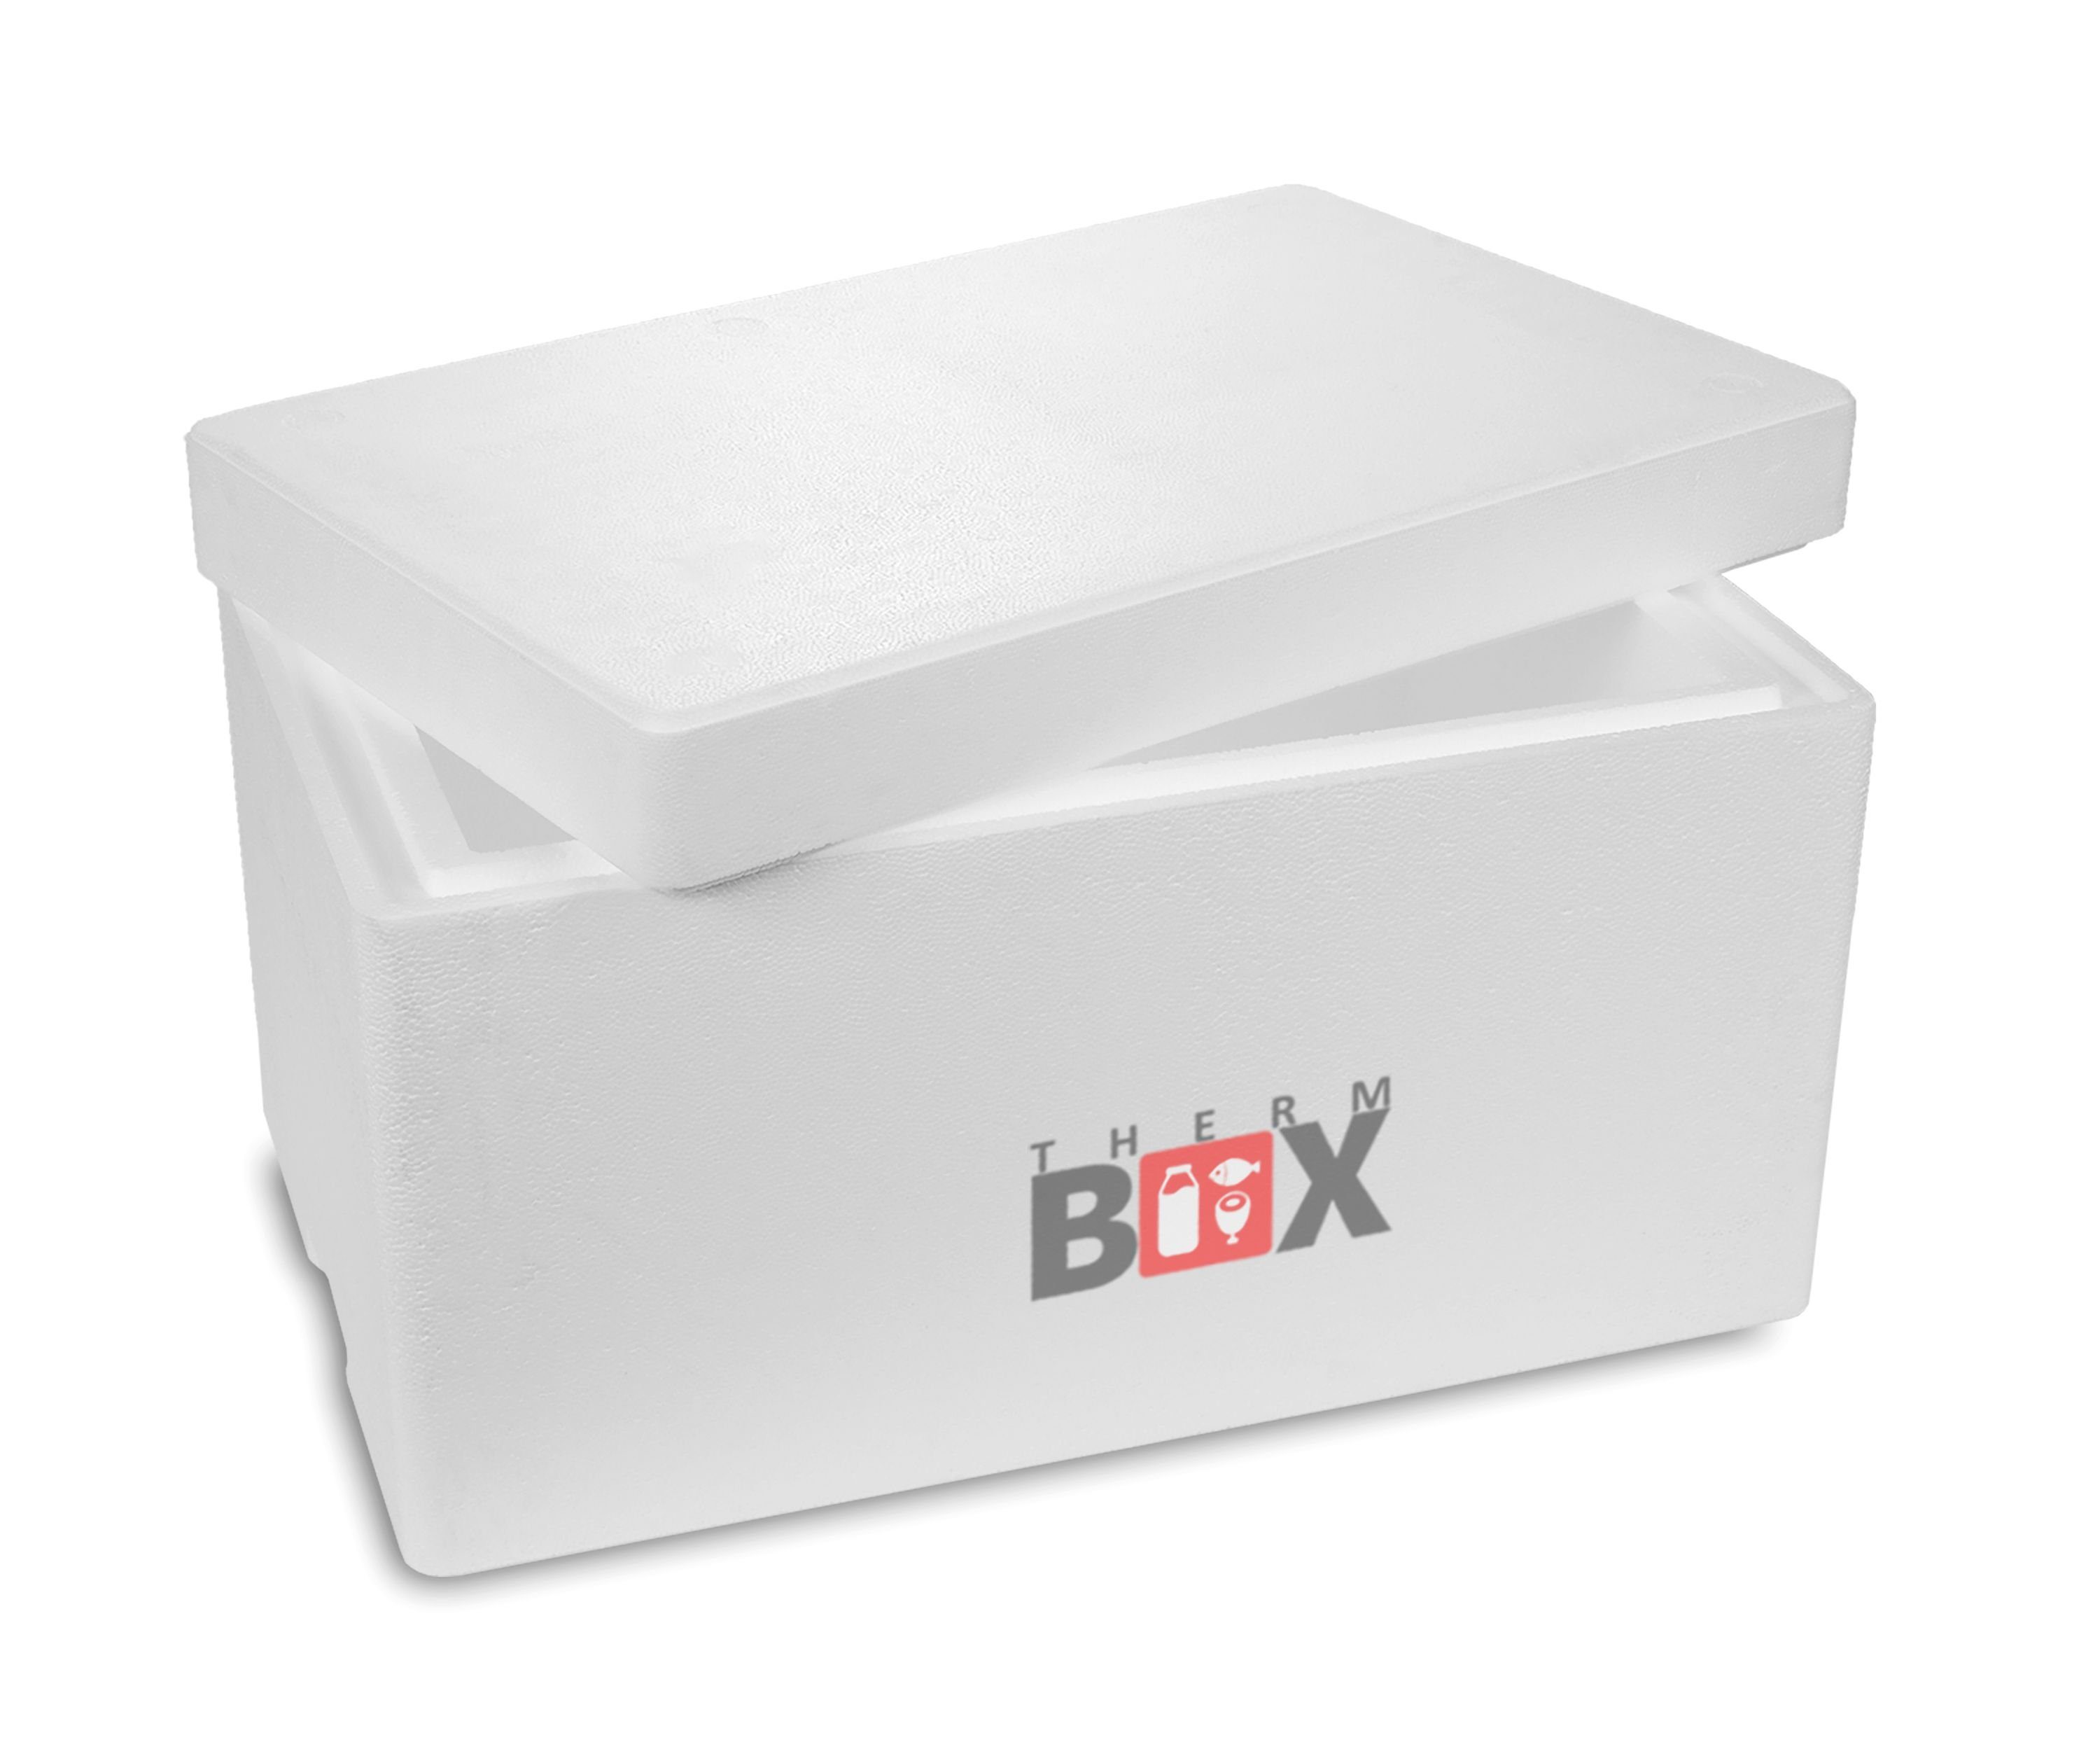 THERM-BOX Thermobehälter Styroporbox 37W Innen: 51x30x24cm Wand: 4cm 37,5L, Styropor-Verdichtet, (1, 0-tlg., Box mit Deckel im Karton), Isolierbox Thermobox Kühlbox Warmhaltebox Wiederverwendbar